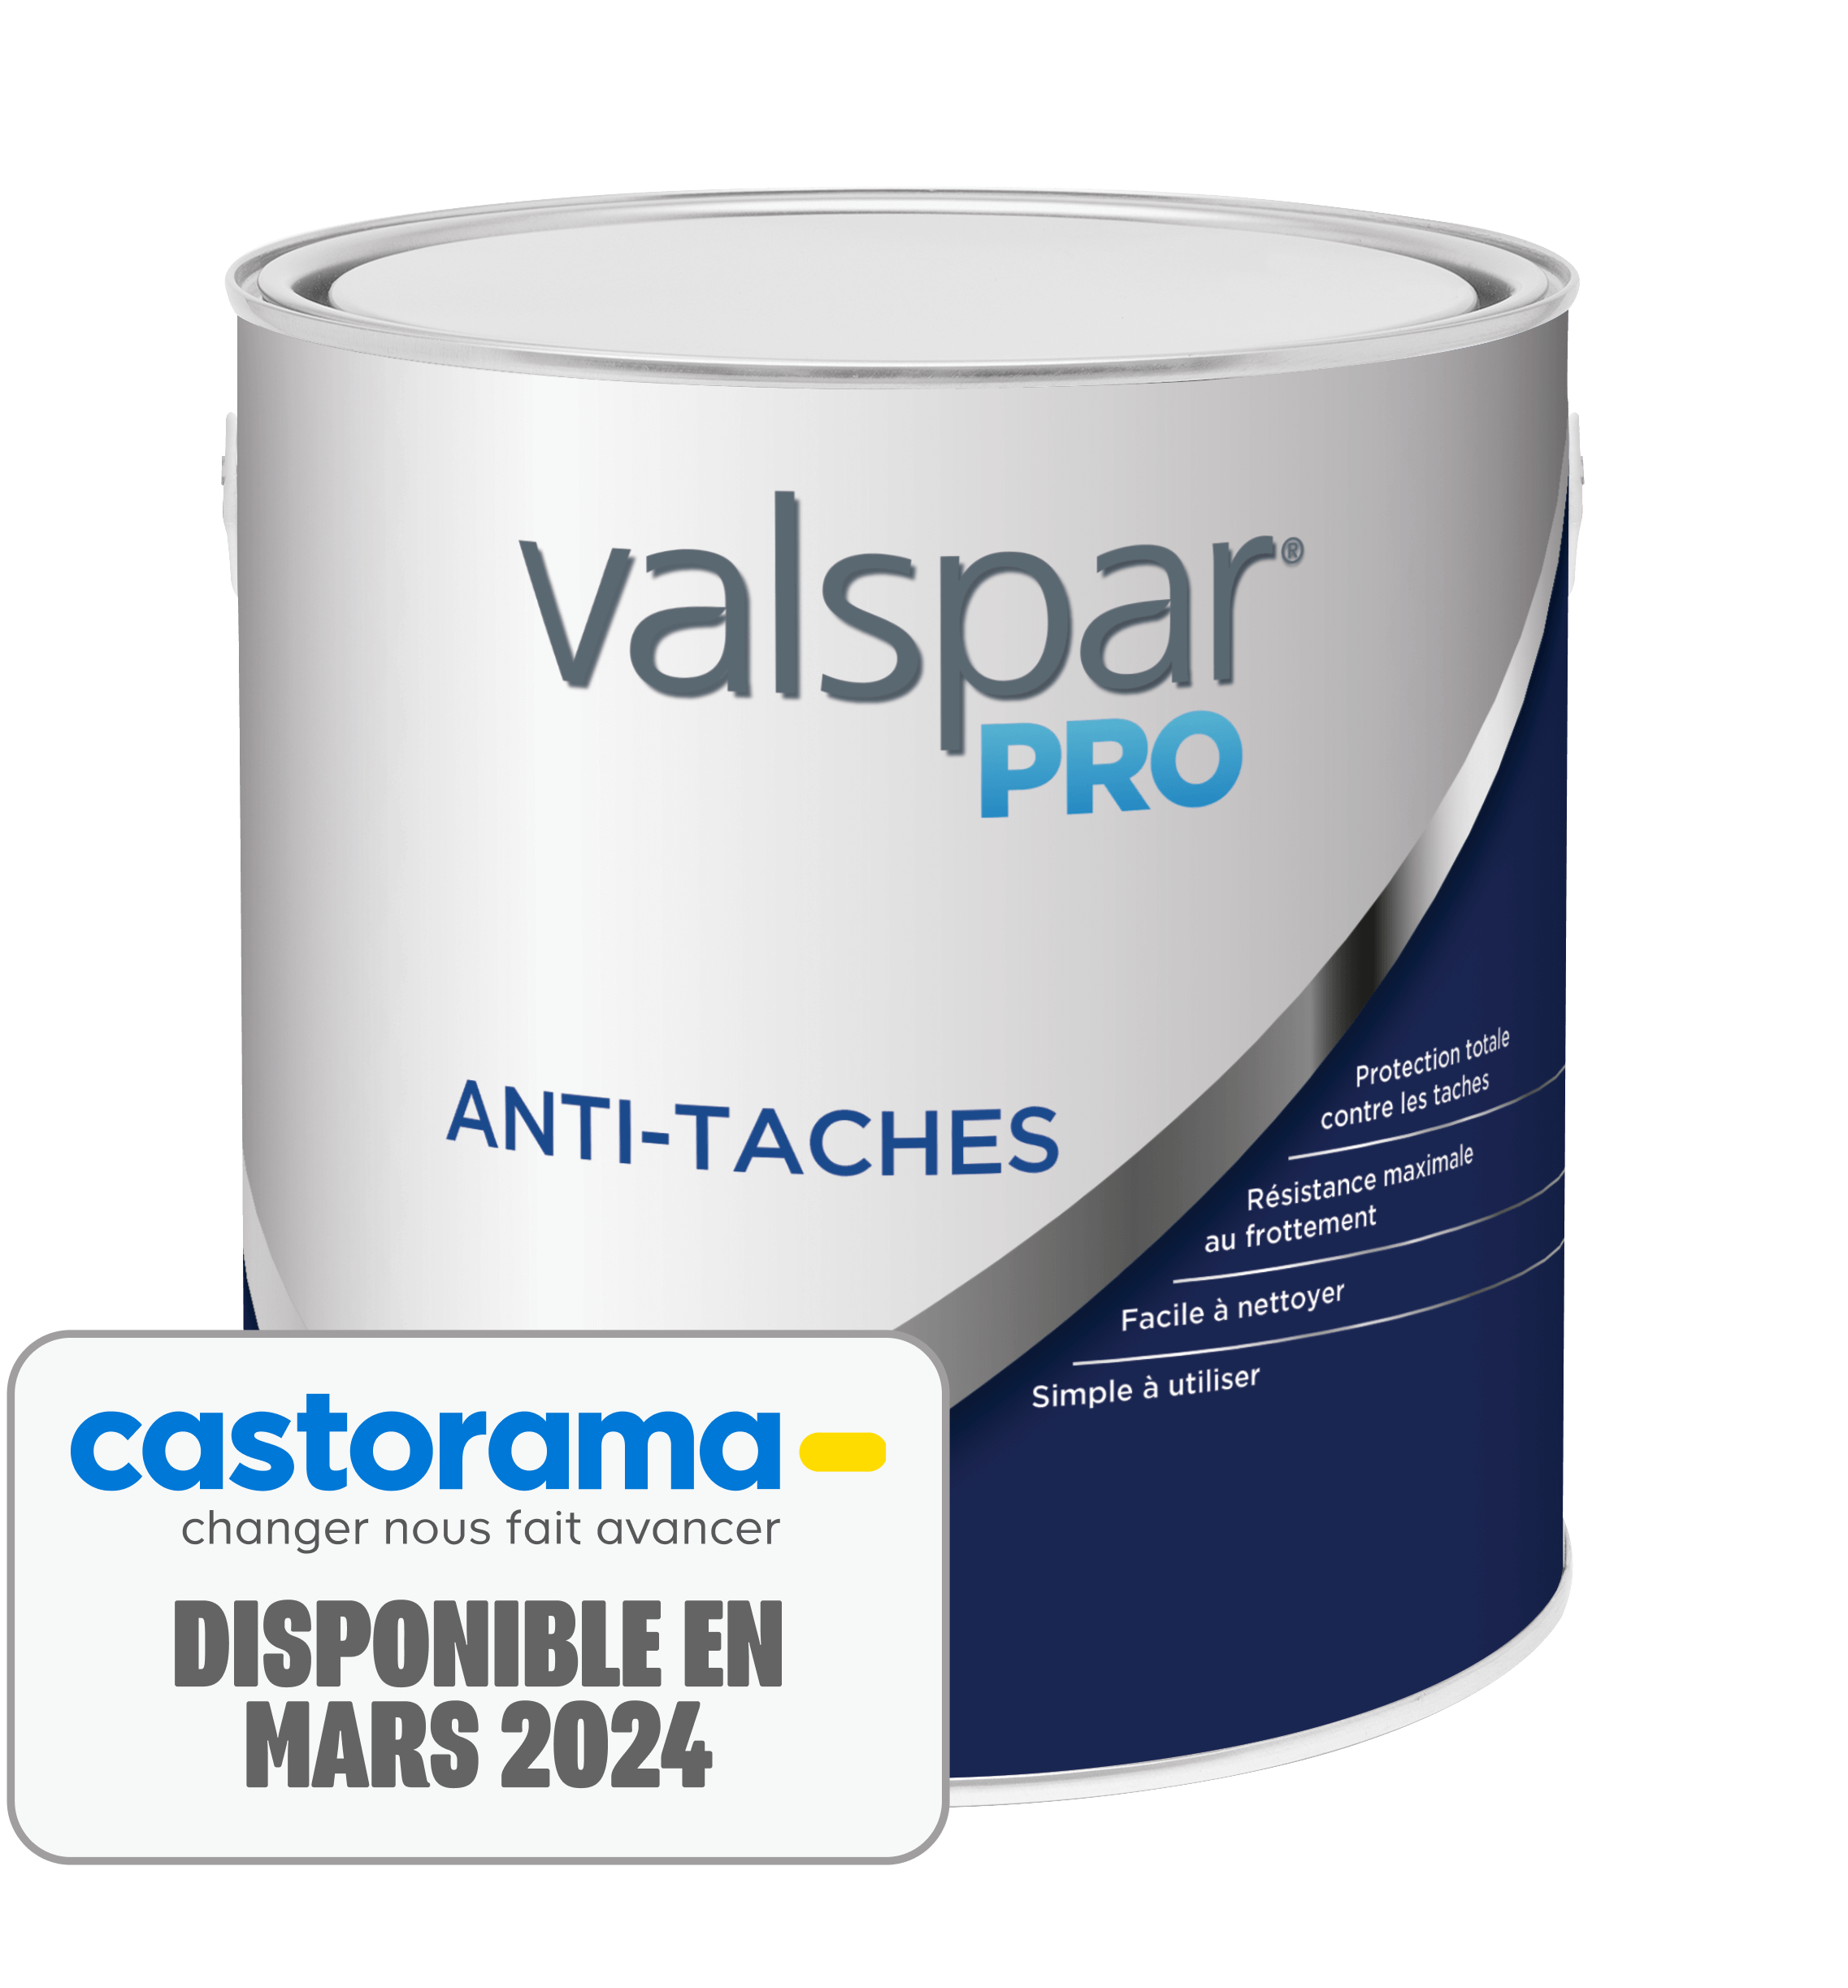 Valspar® Pro Anti-taches